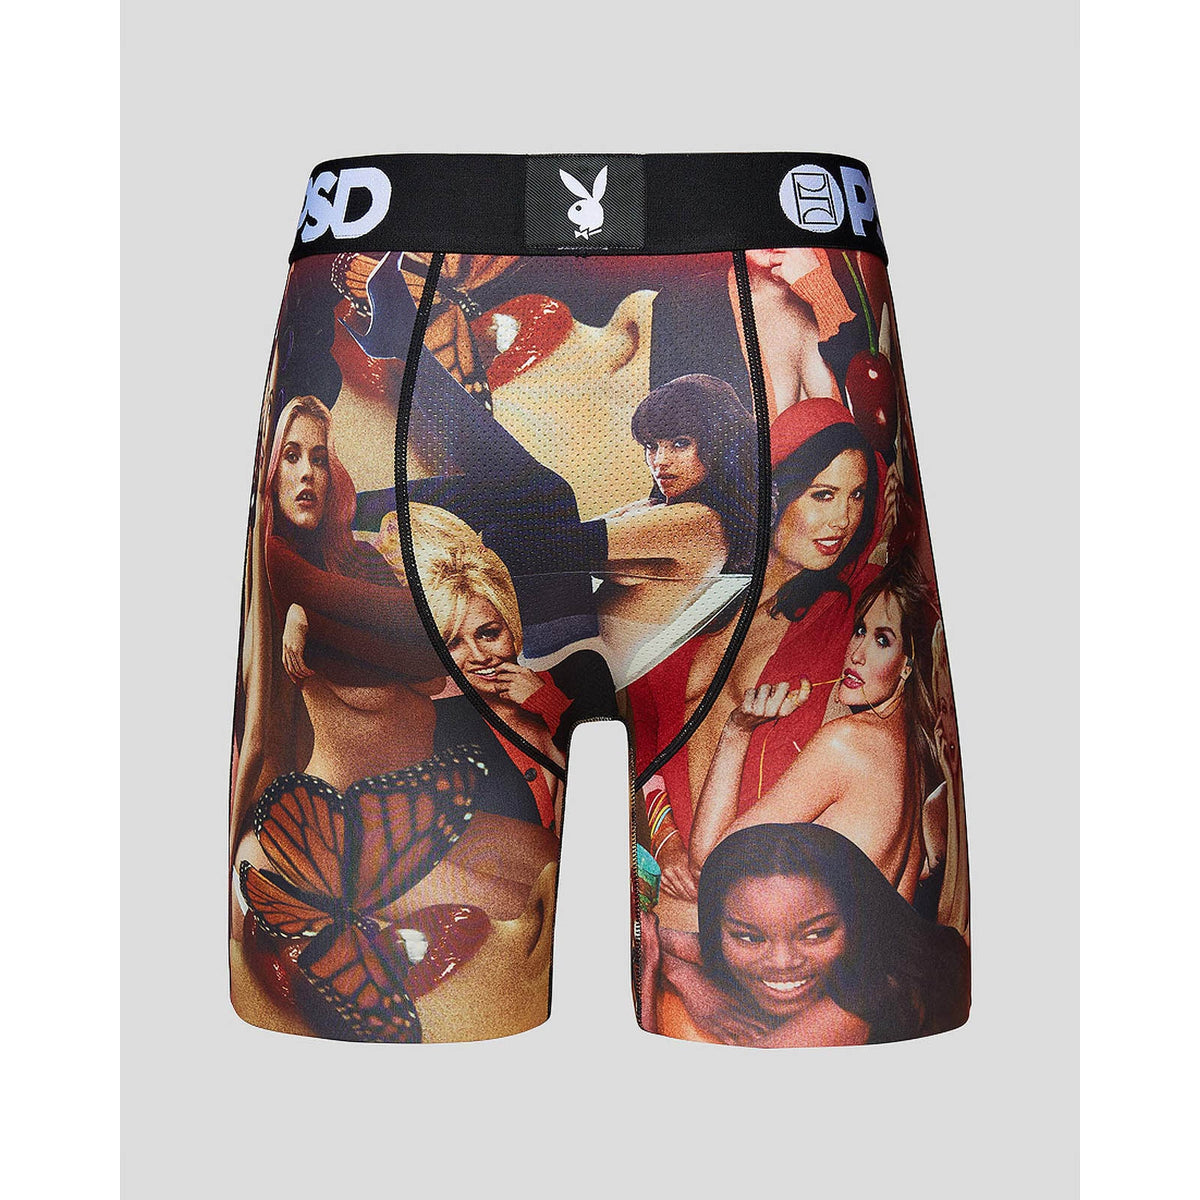 Playboy Cover Girls Boxer Briefs-Mens Underwear-Scarlett Dawn